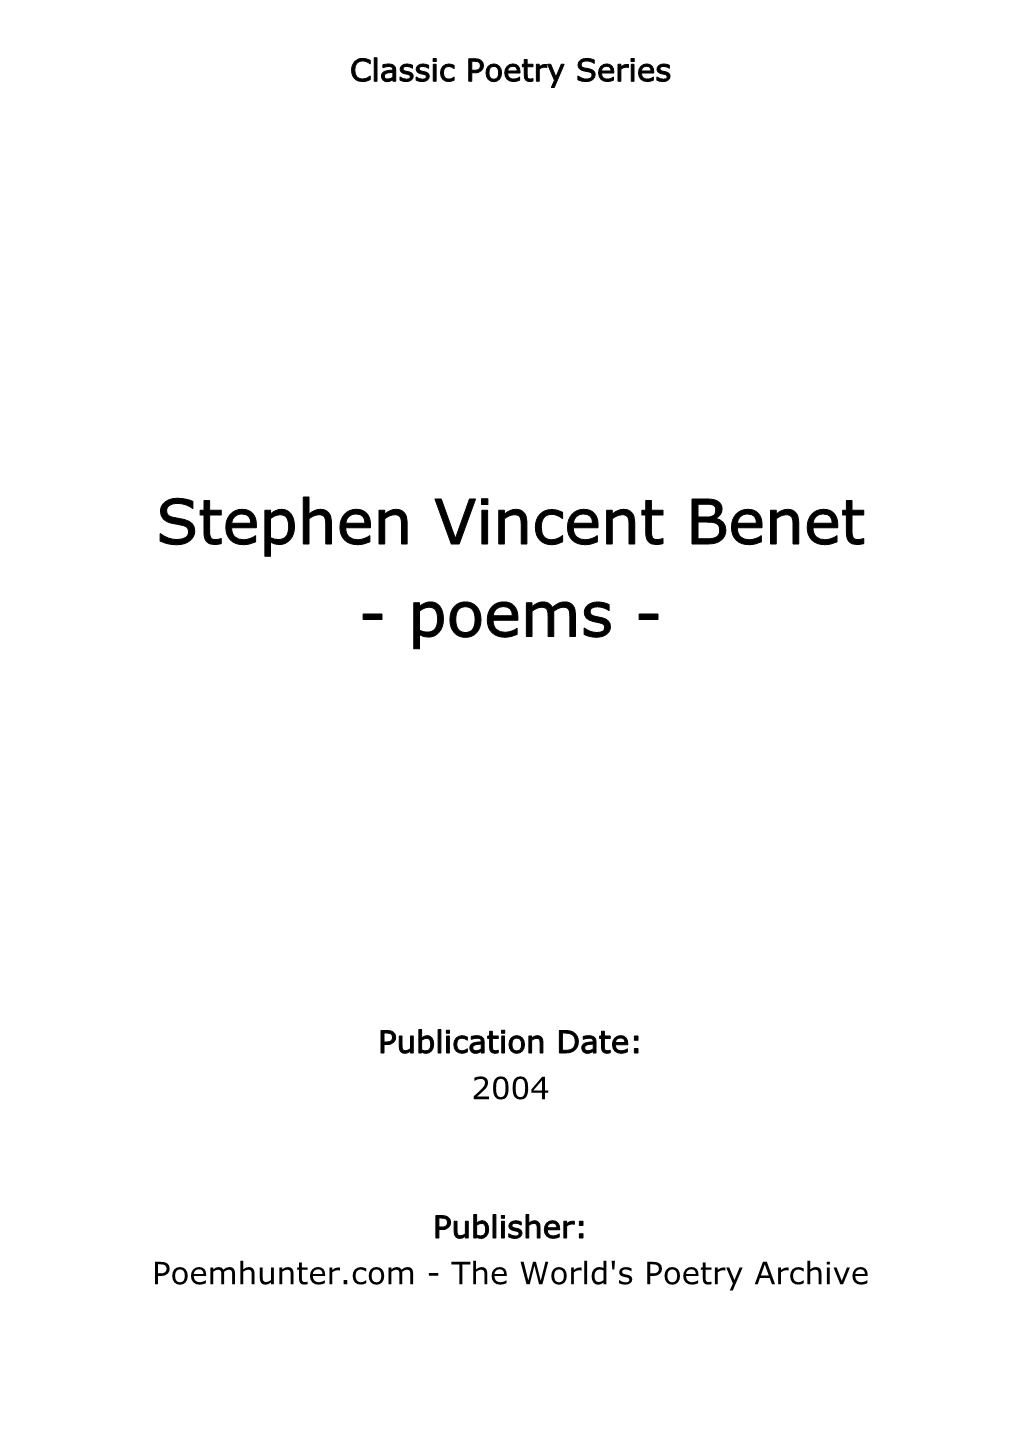 Stephen Vincent Benet - Poems